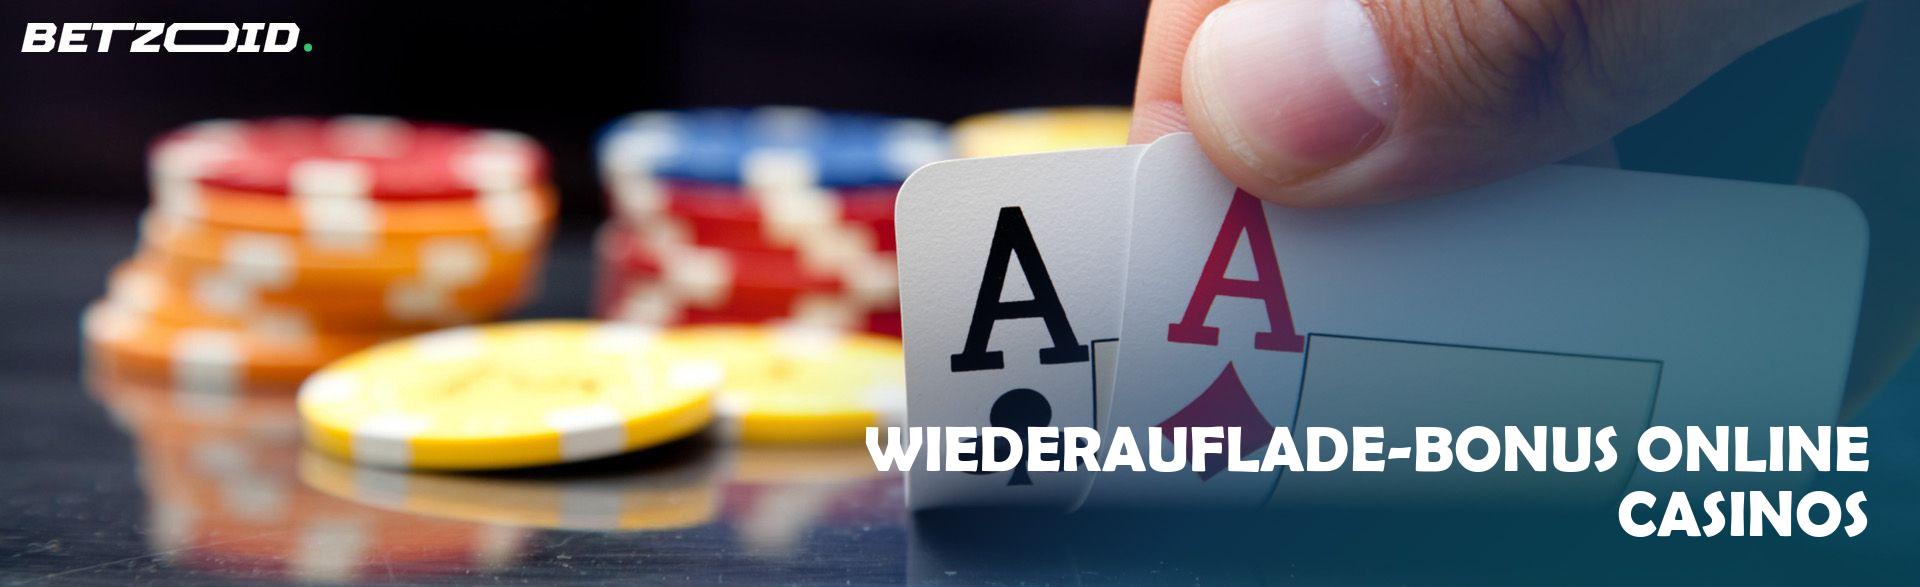 Wiederauflade-Bonus Online Casinos.